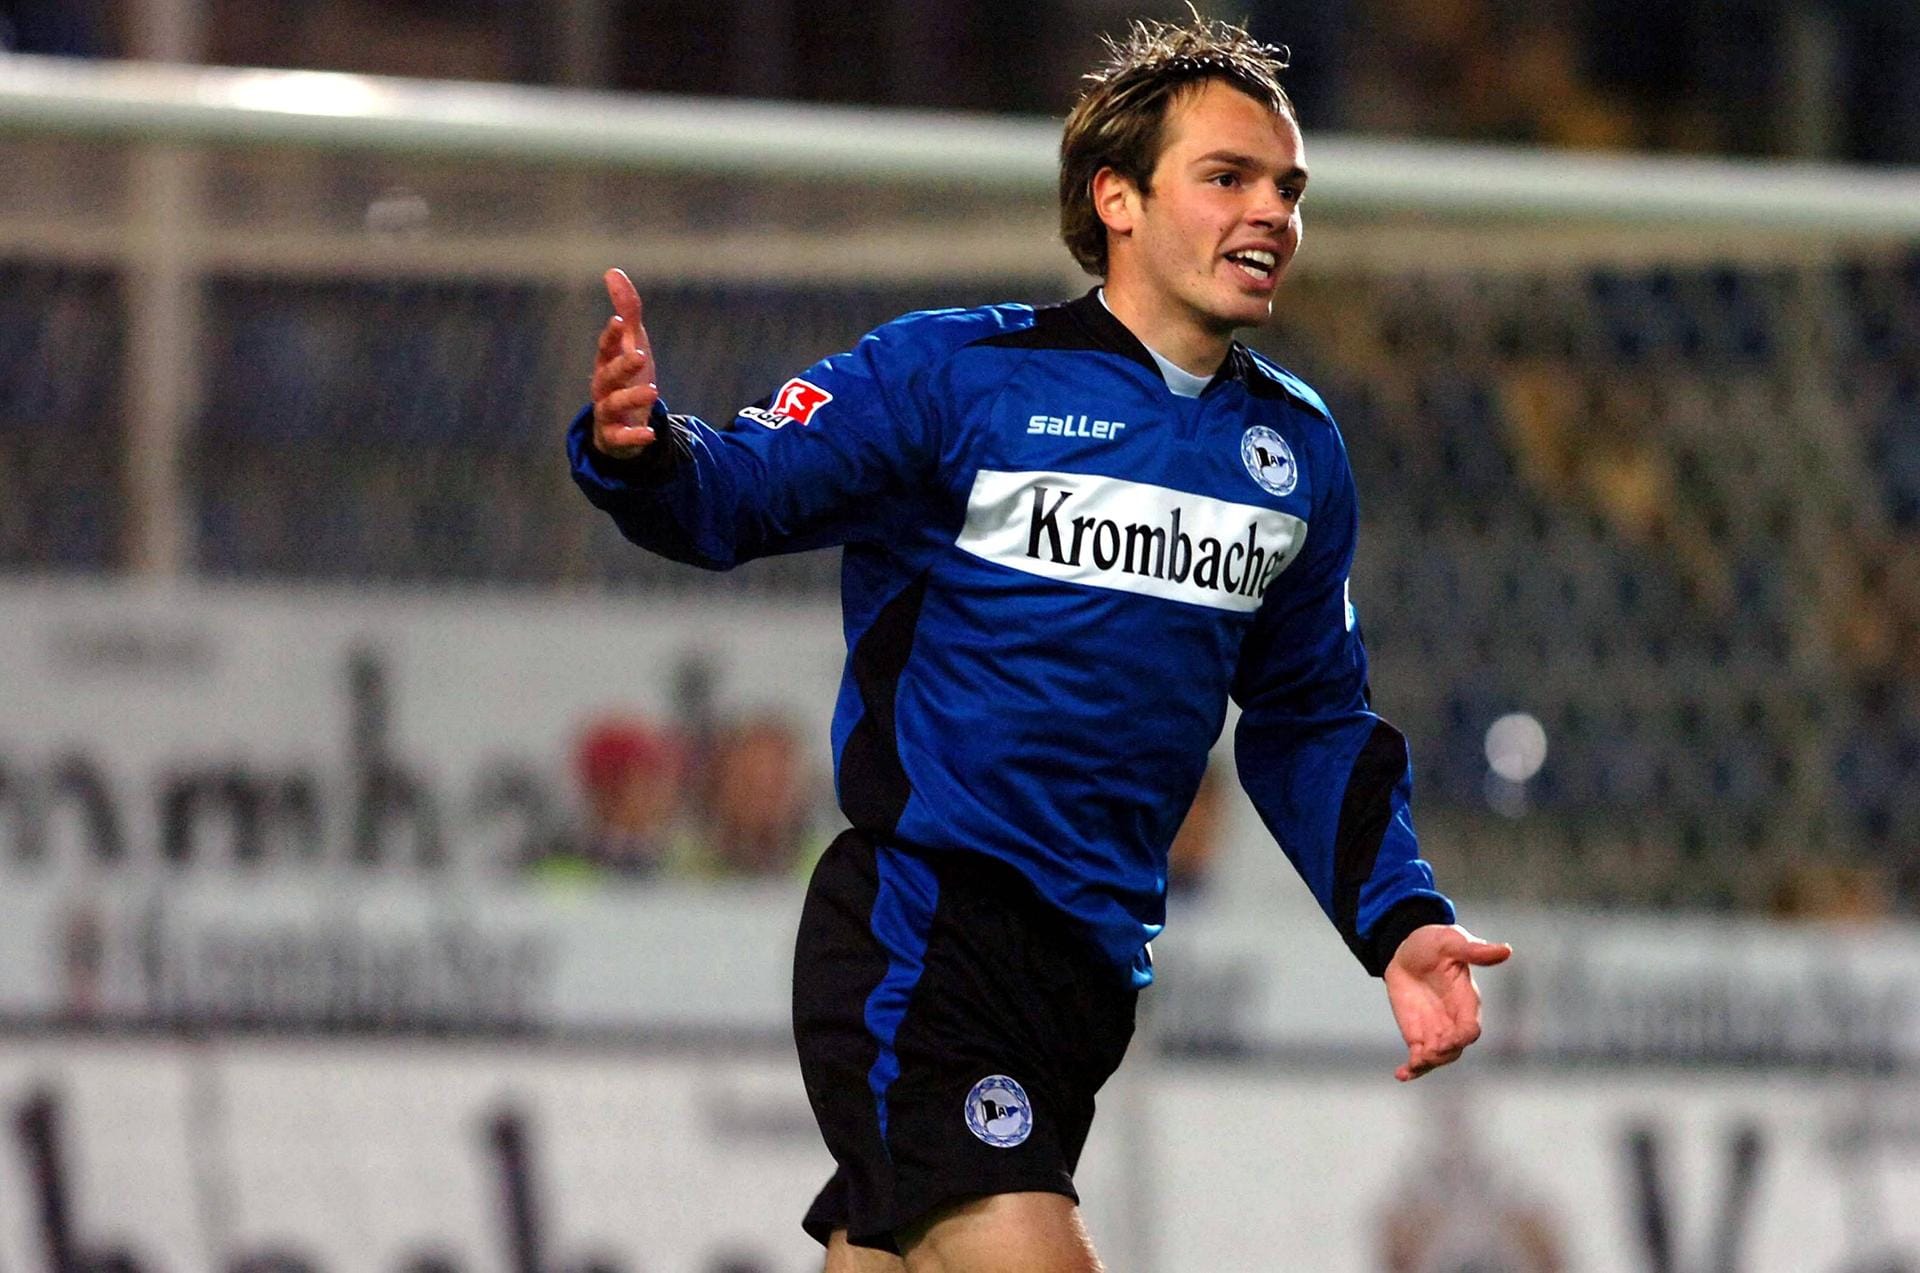 Heiko Westermann (2005-2007) – "Halb Mensch, halb Tier – HW4", hieß es über den Innenverteidiger in seinen Jahren beim HSV. Es war jedoch Bielefeld, wo sich Westermann als Bundesliga-Stammkraft etablierte. Von dort wechselte er 2007 zu Schalke 04 und avancierte zum Nationalspieler. 2018 beendete er seine aktive Karriere, seit Sommer 2019 ist er Co-Trainer der deutschen U15-Nationalmannschaft.